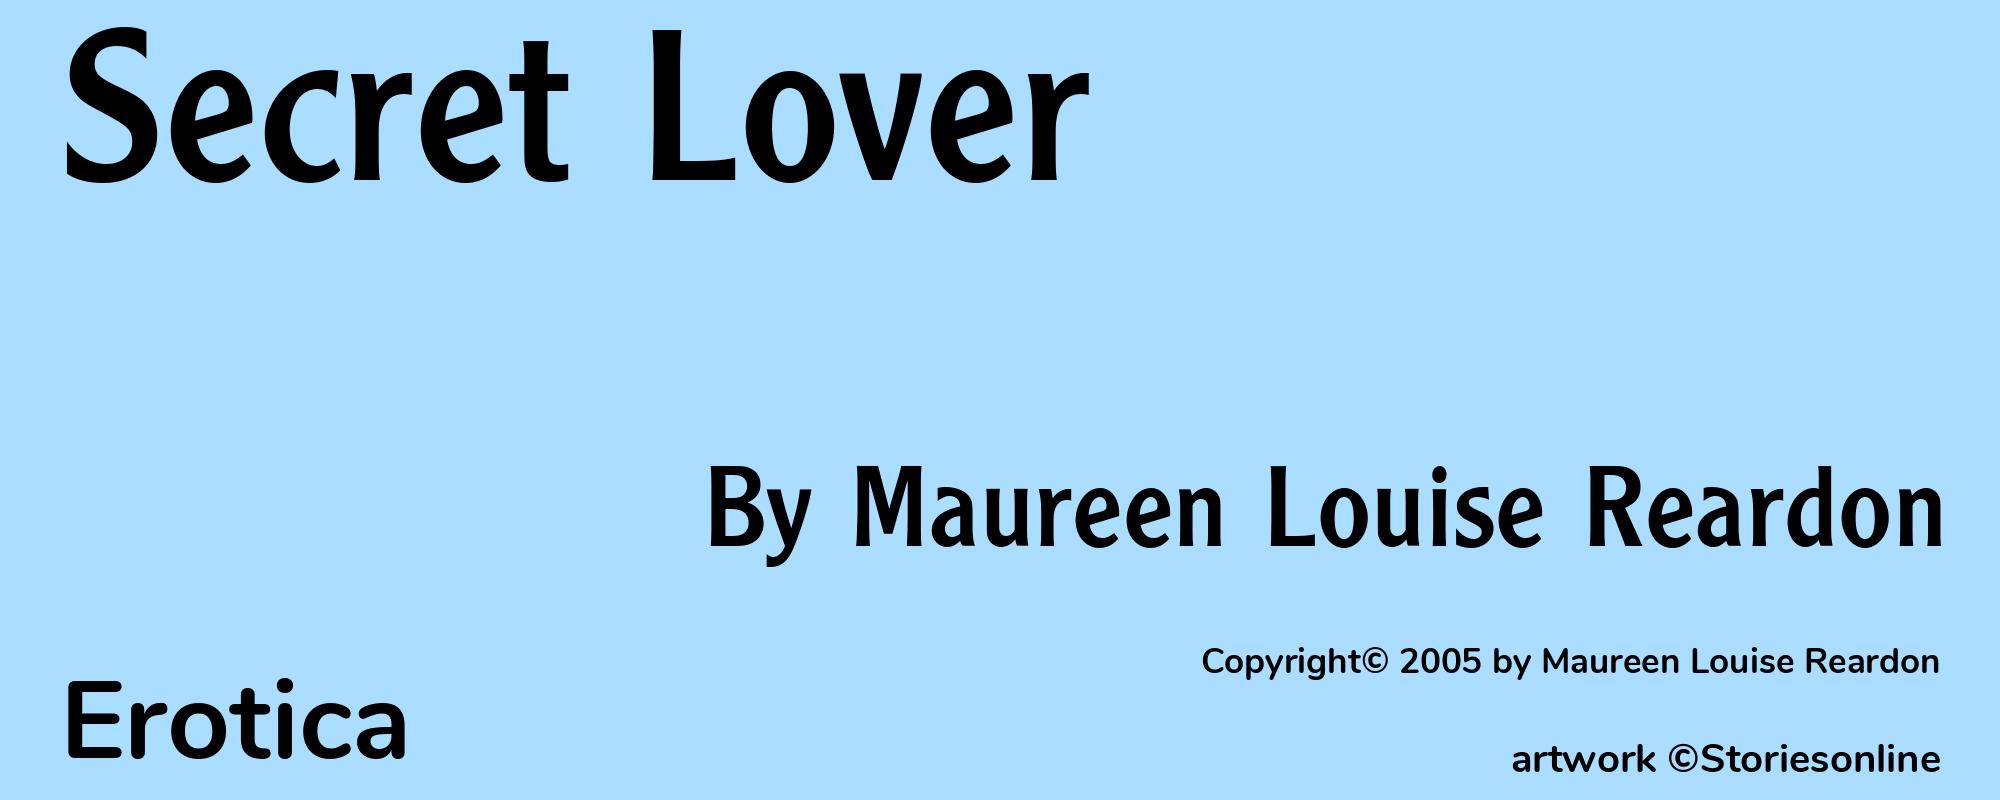 Secret Lover - Cover